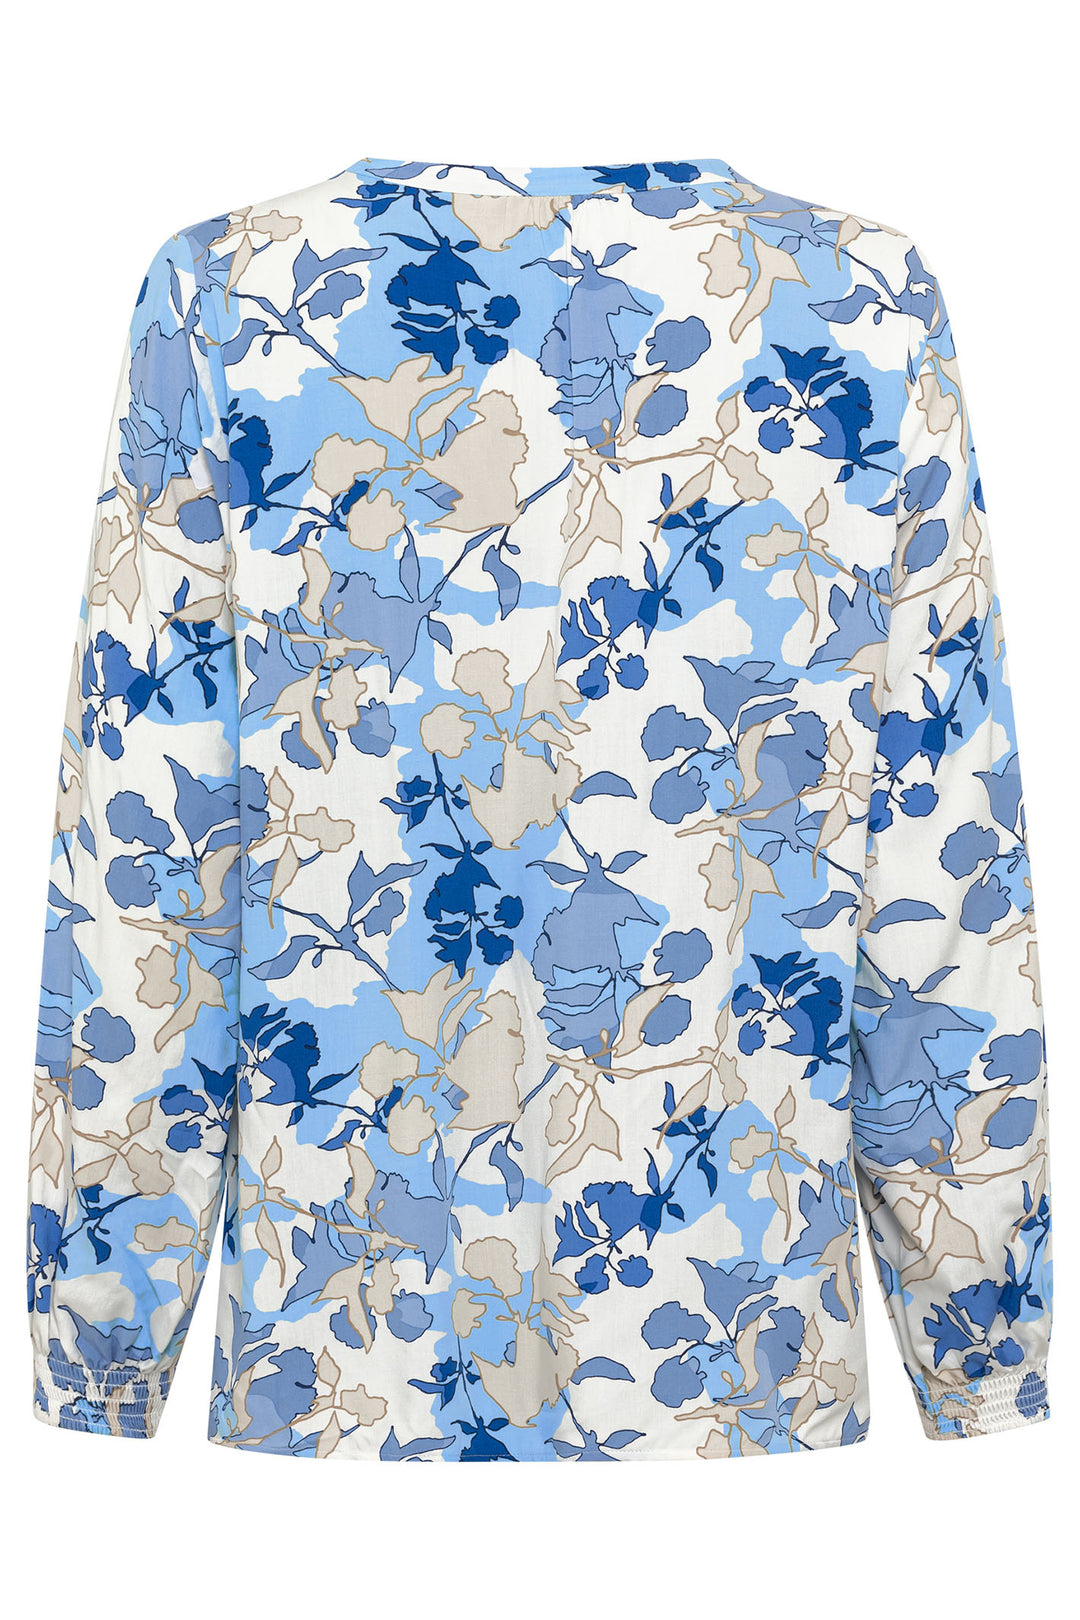 Olsen 12001861 Ciel Blue Flower Print Split Neck Blouse - Experience Boutique